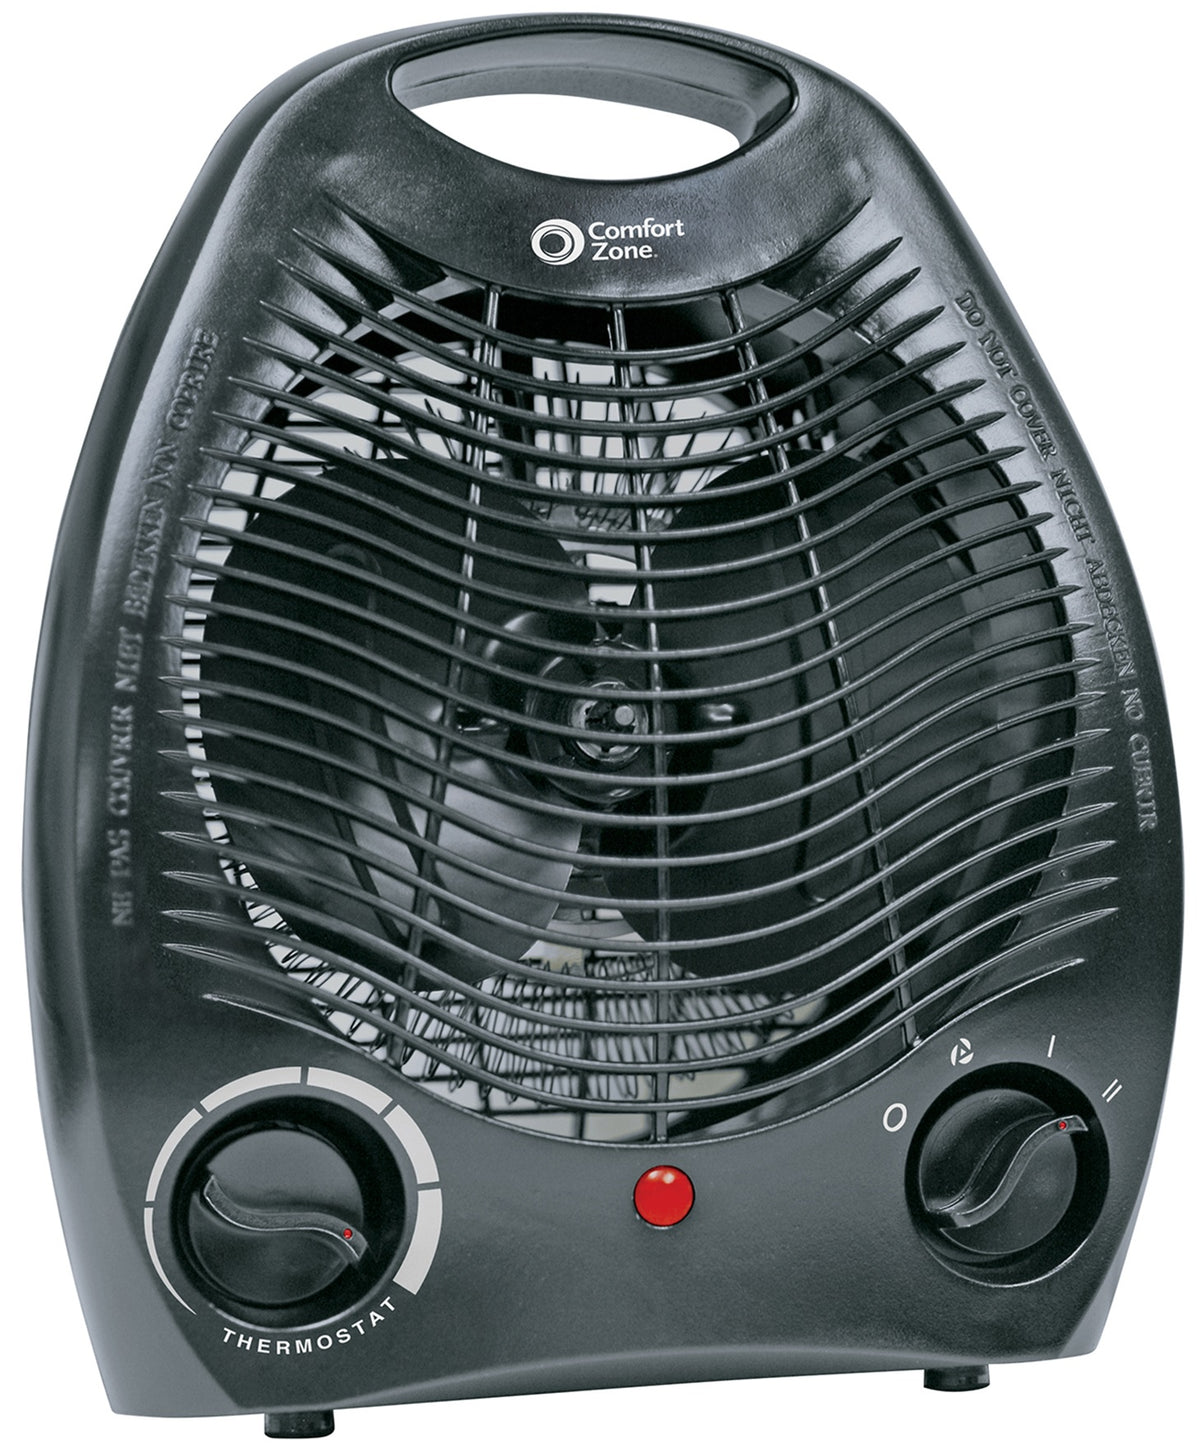 Comfort Zone CZ40BK Personal Fan Forced Heater, Black